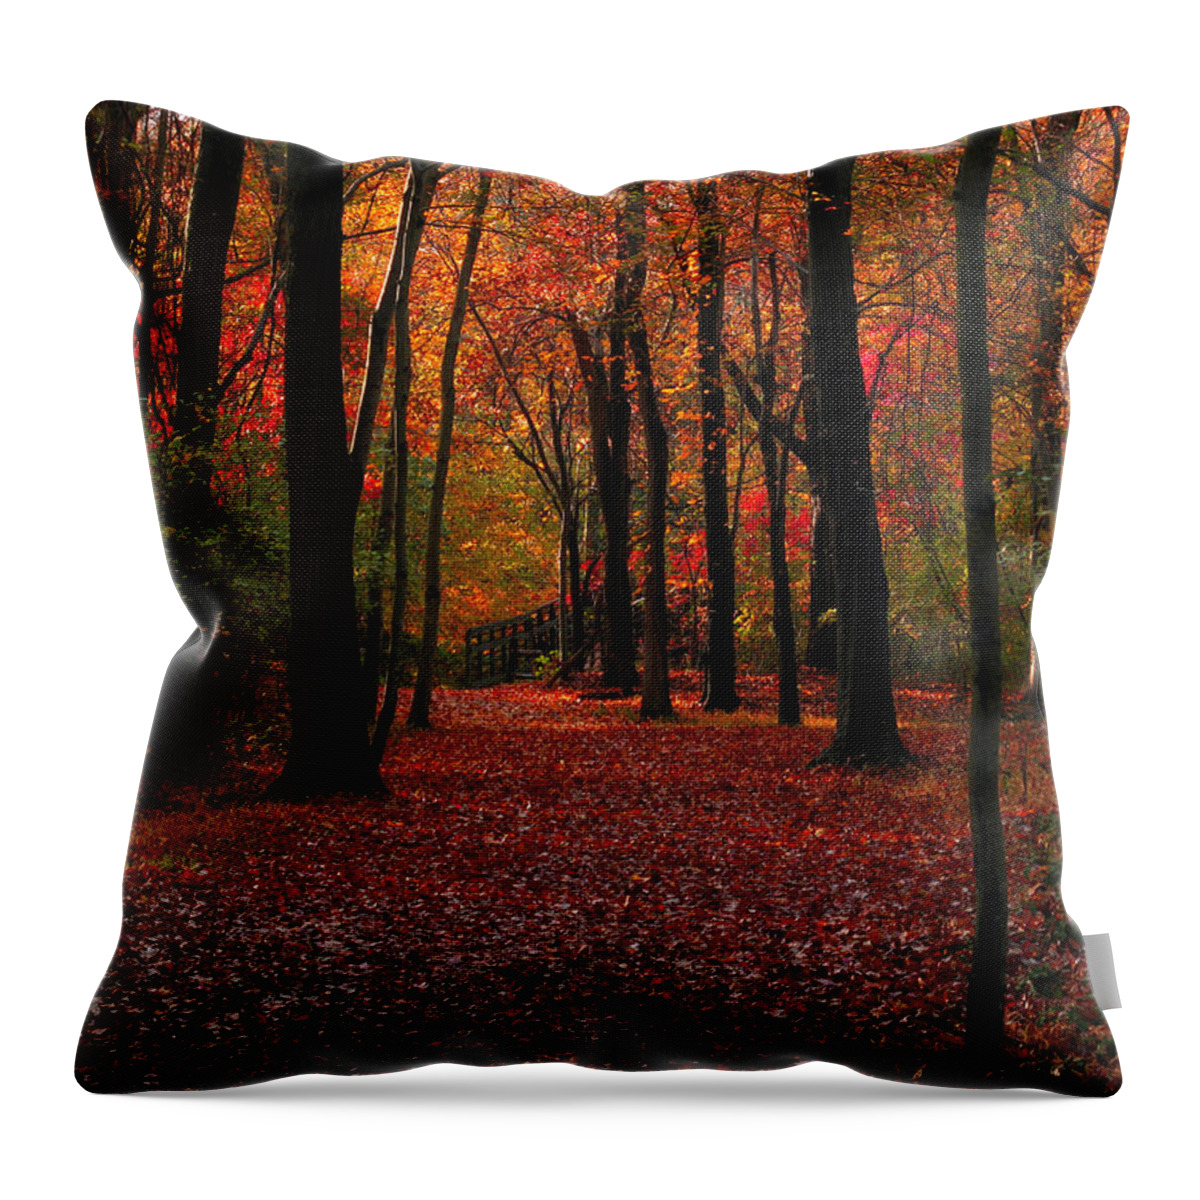 Autumn Throw Pillow featuring the photograph Autumn III by Raymond Salani III